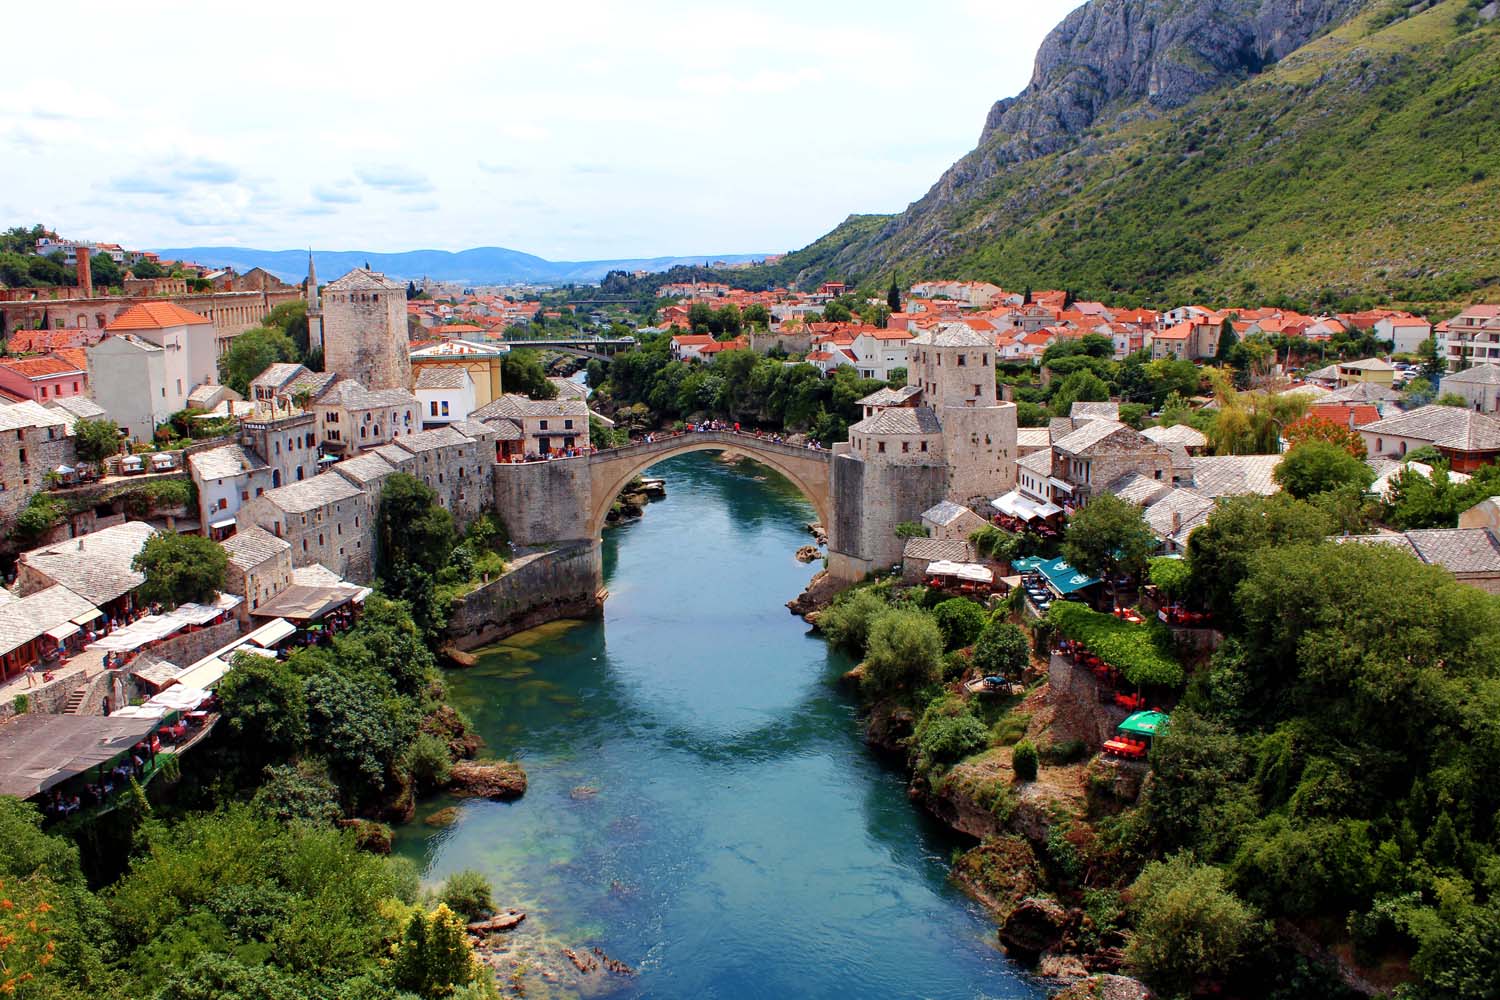 Mostar. Day trip to Bosnia & Herzegovina